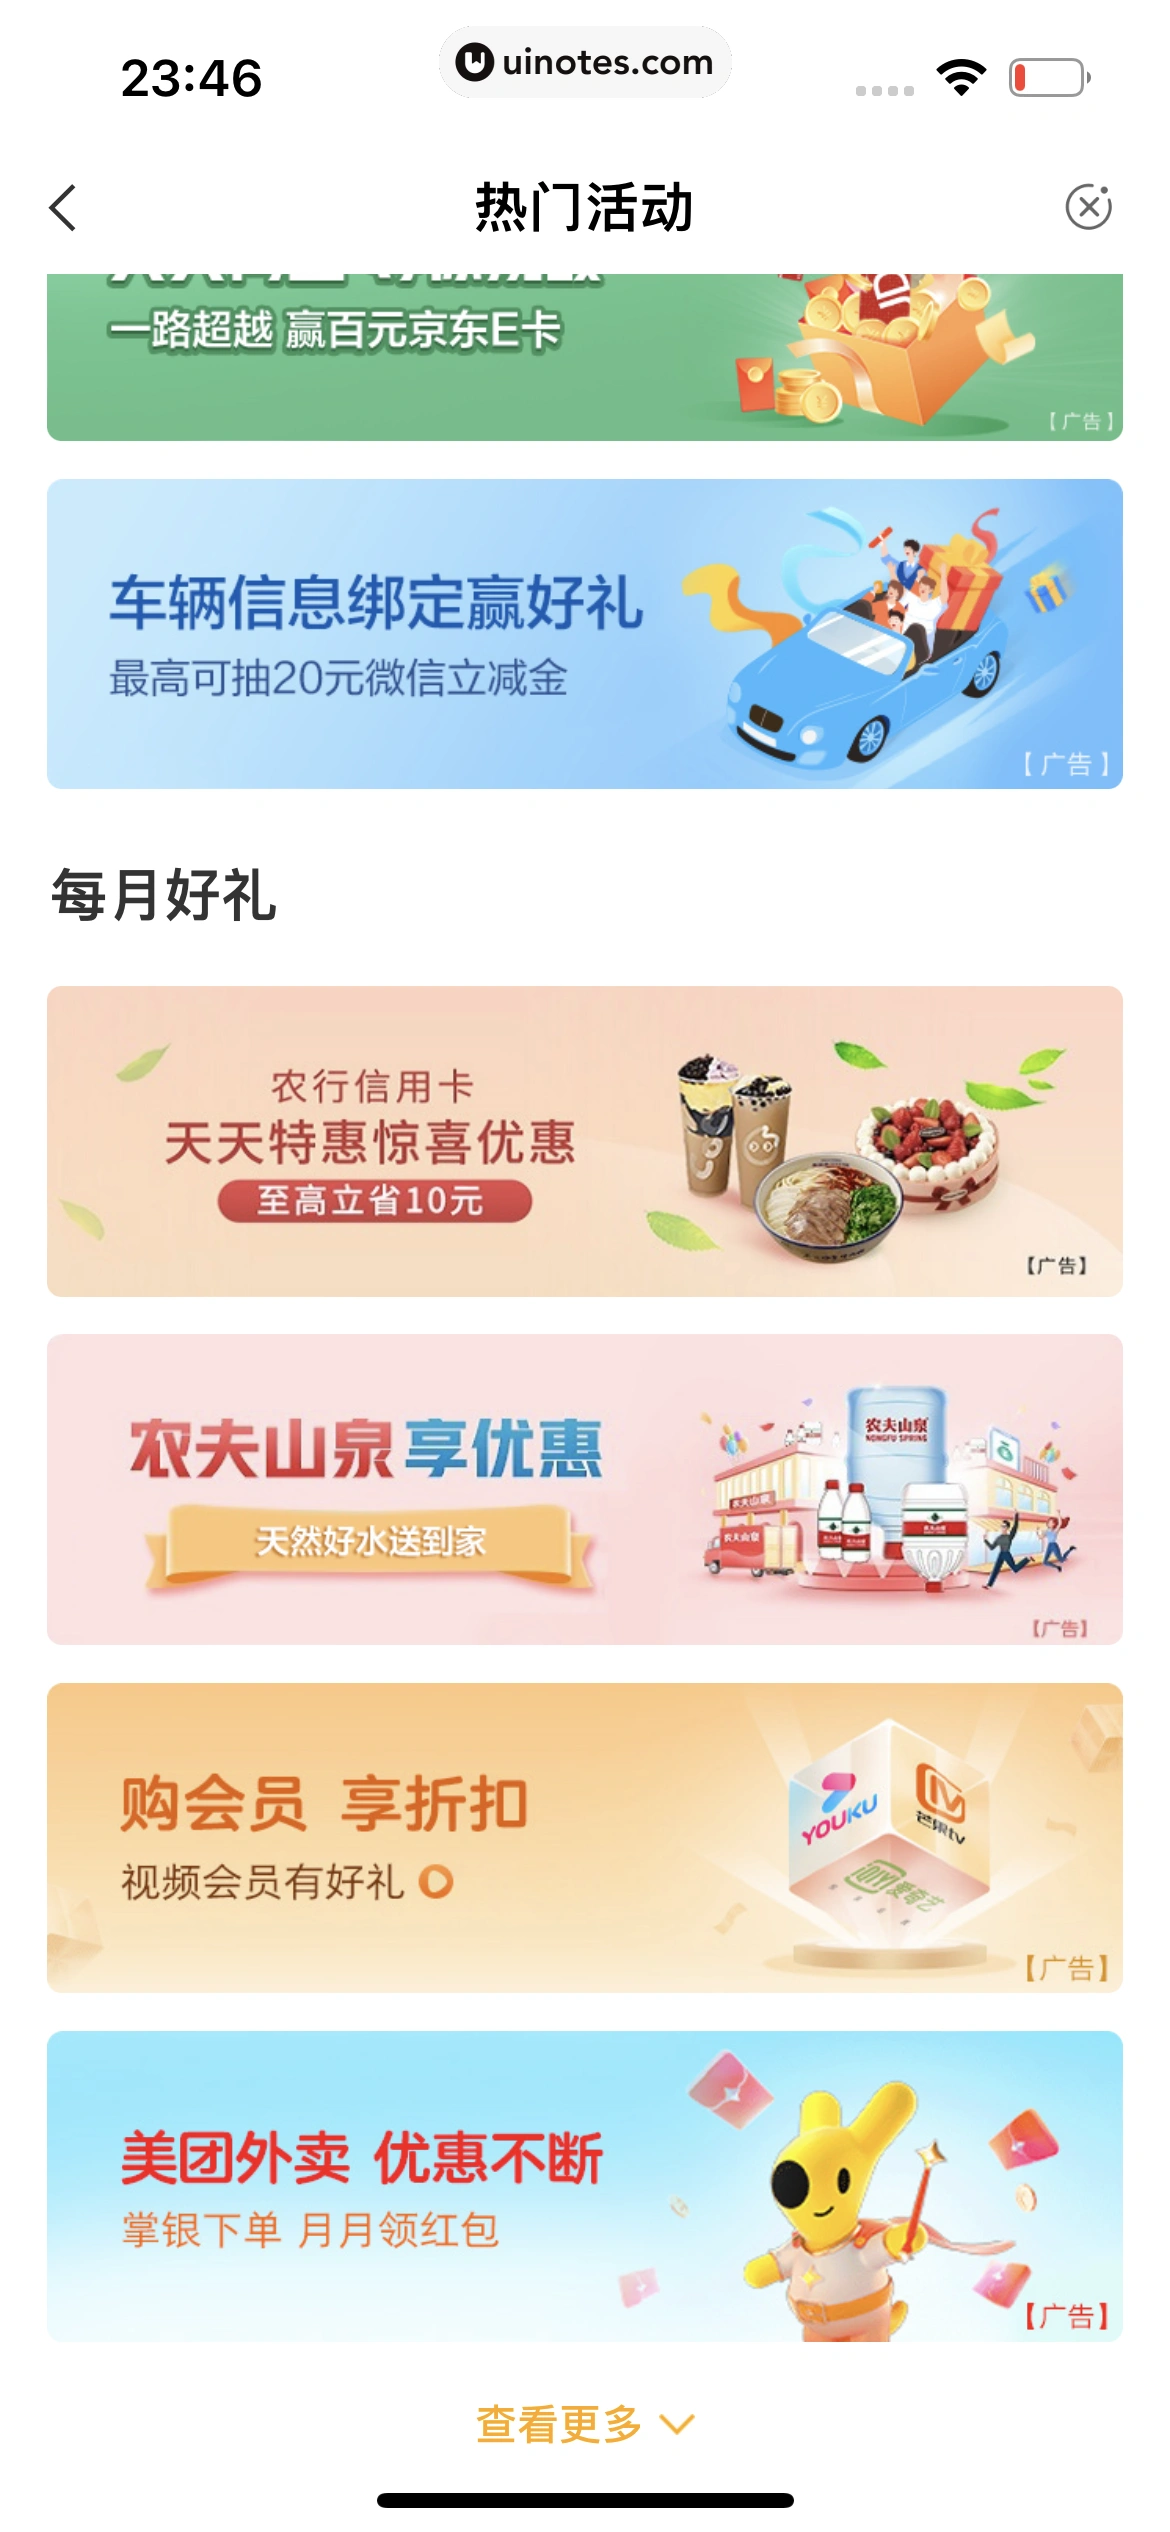 中国农业银行 App 截图 163 - UI Notes